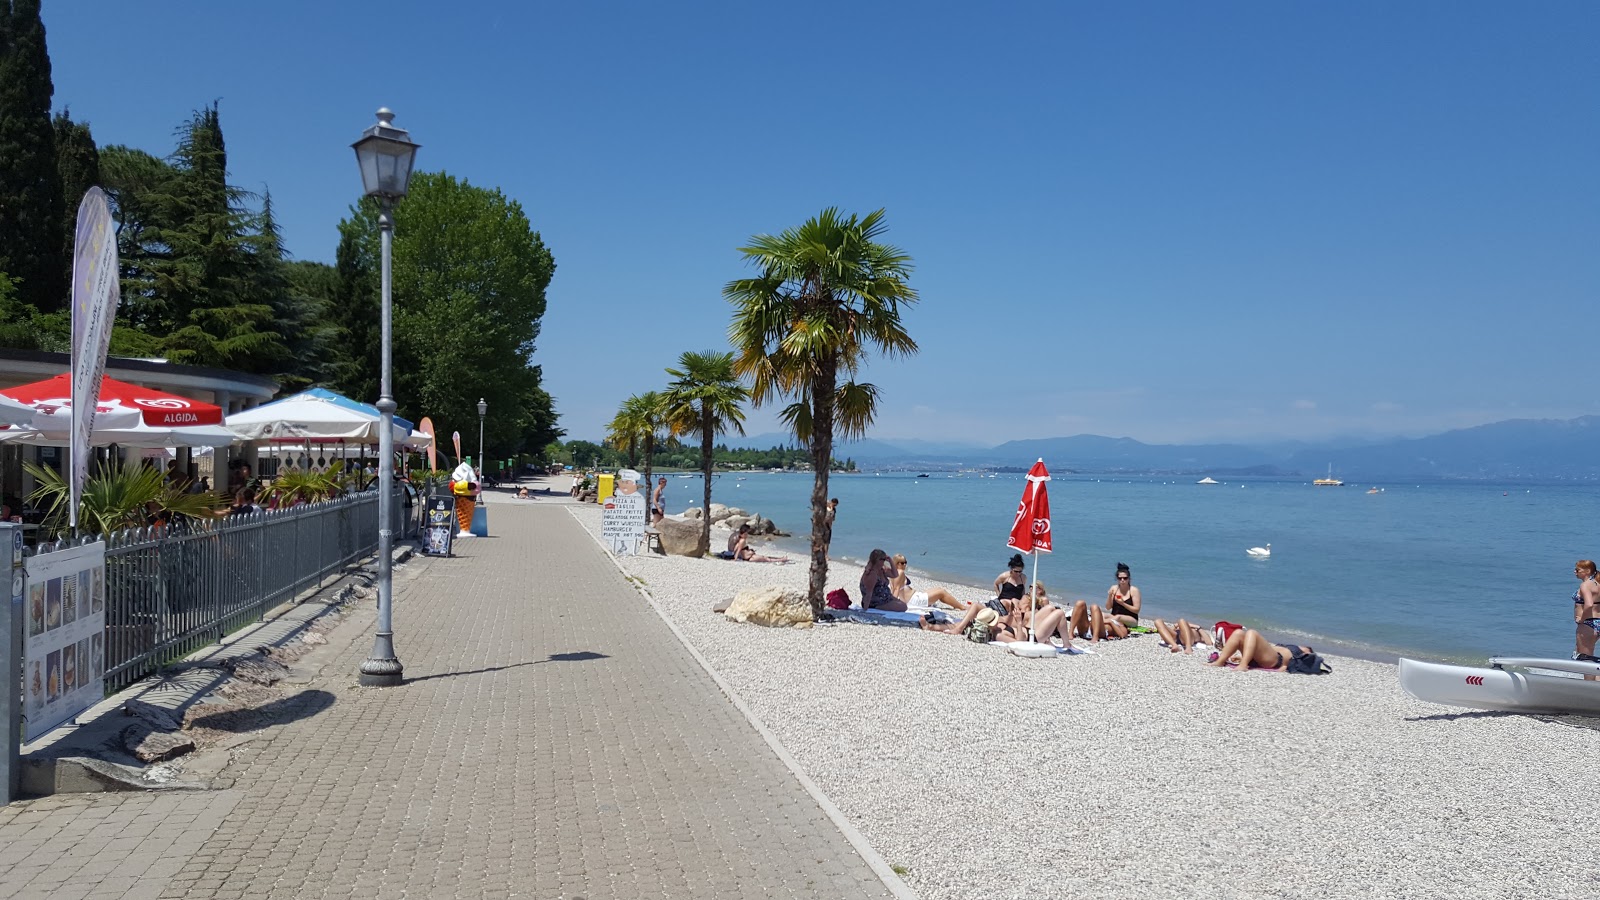 Foto de Spiaggia Dei Capuccini con playa amplia